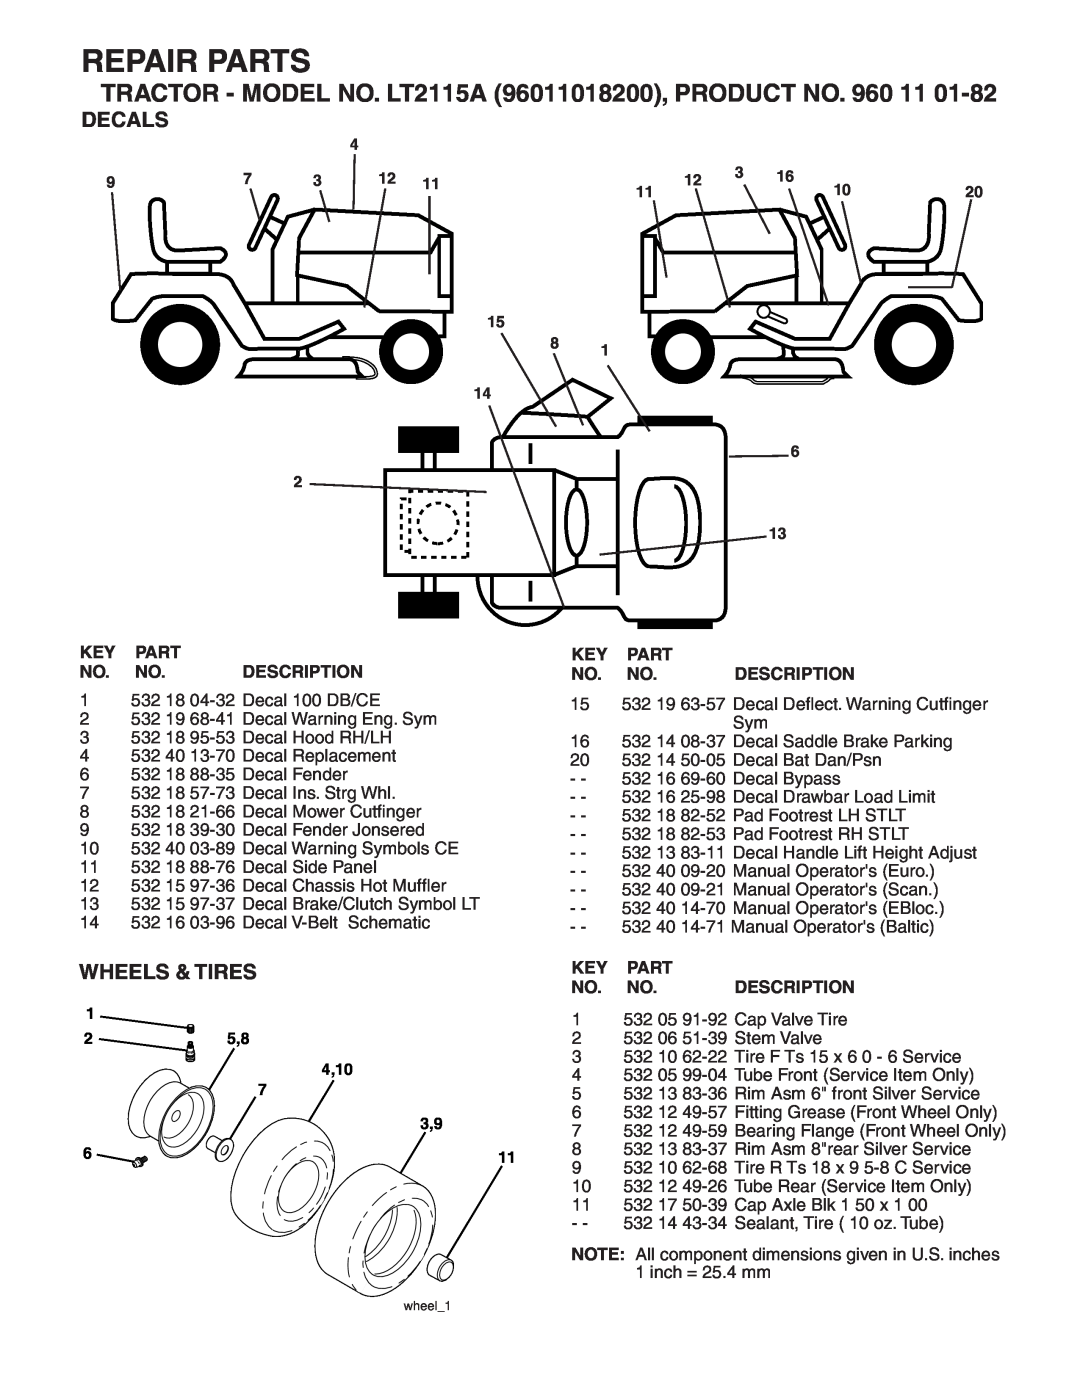 Jonsered LT2115A manual Decals, Wheels & Tires, Description, Repair Parts 